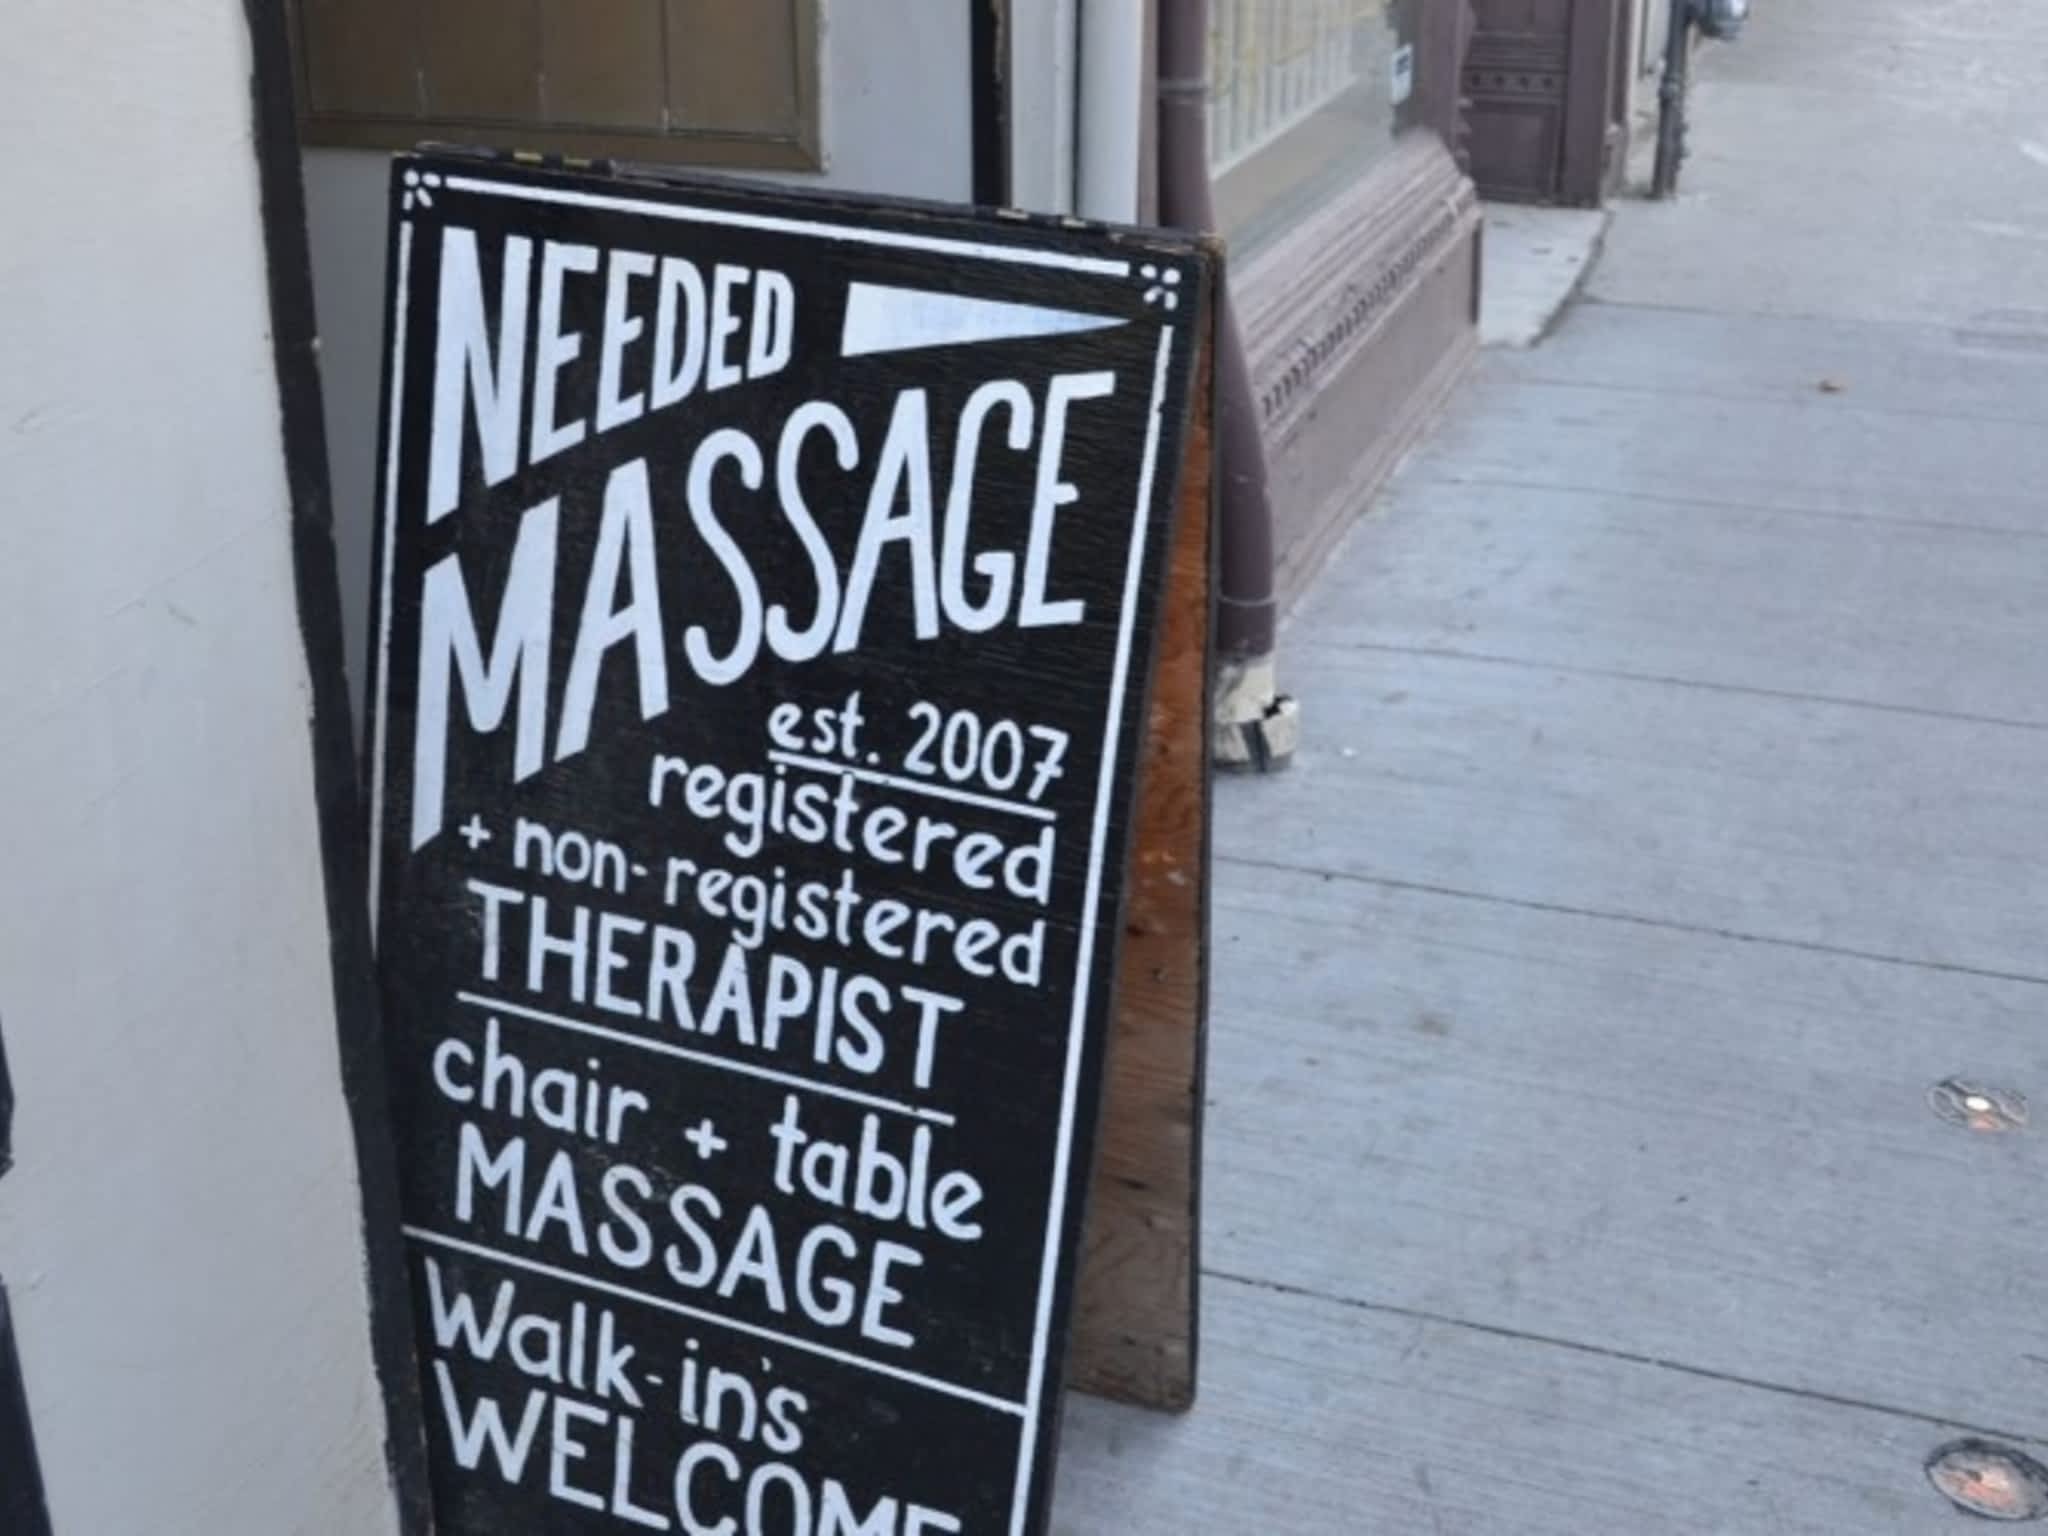 photo Needed Massage